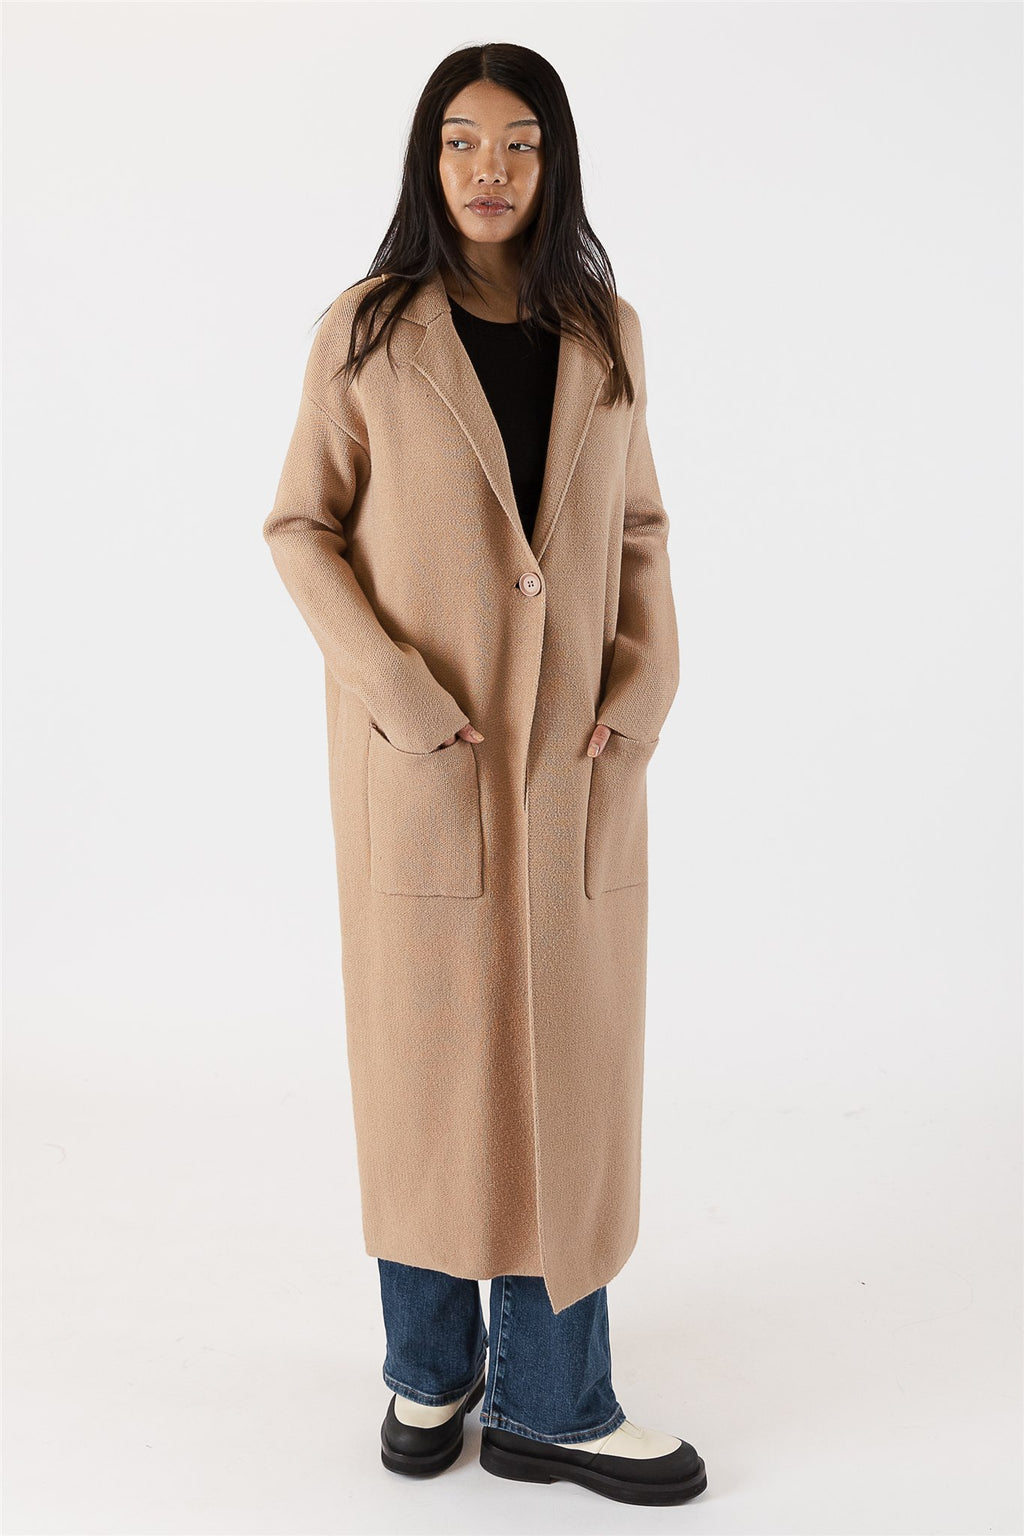 Lyla & Luxe - Jimmi Long Coat